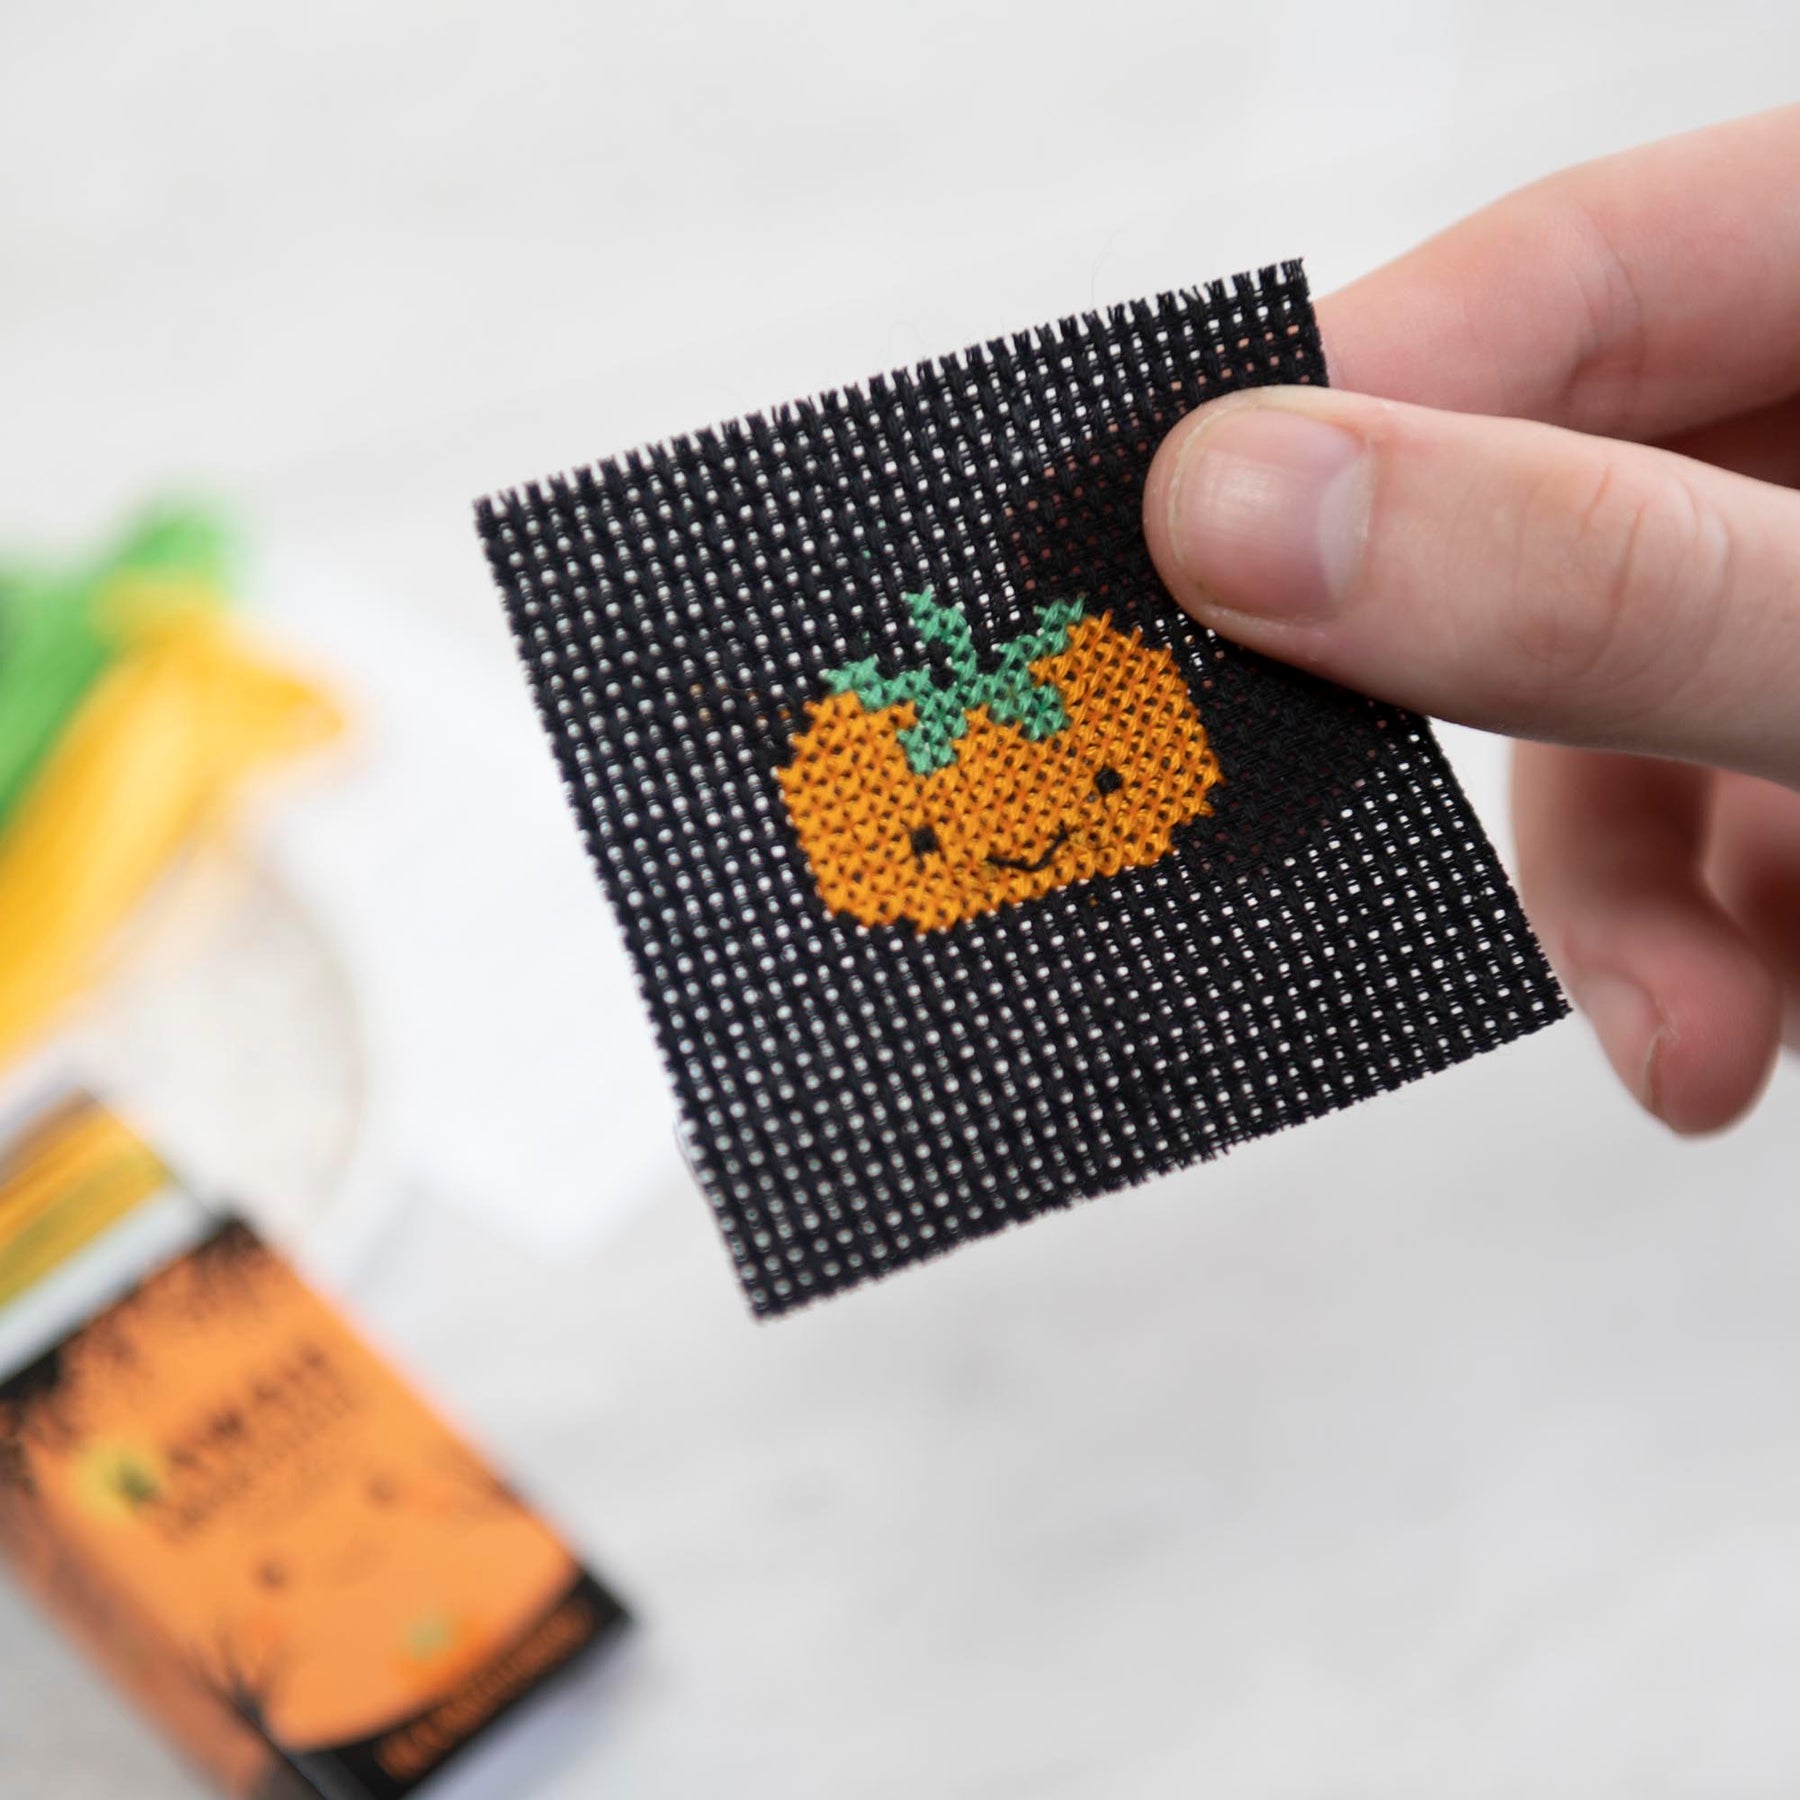 Mini Cross Stitch Kit With Kawaii Halloween Pumpkin Design